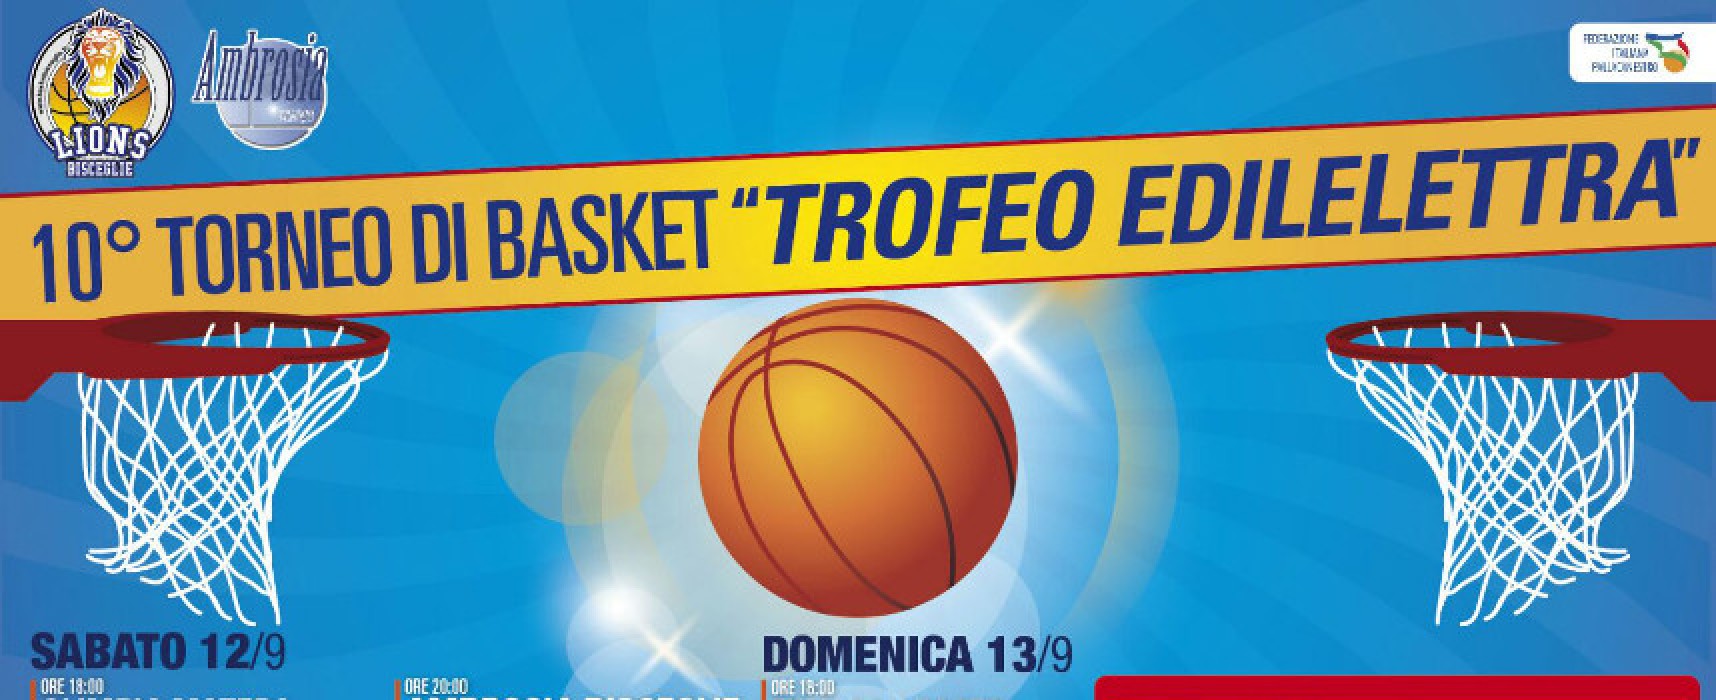 Trofeo Edilelettra, un entusiasmante weekend di basket al Paladolmen